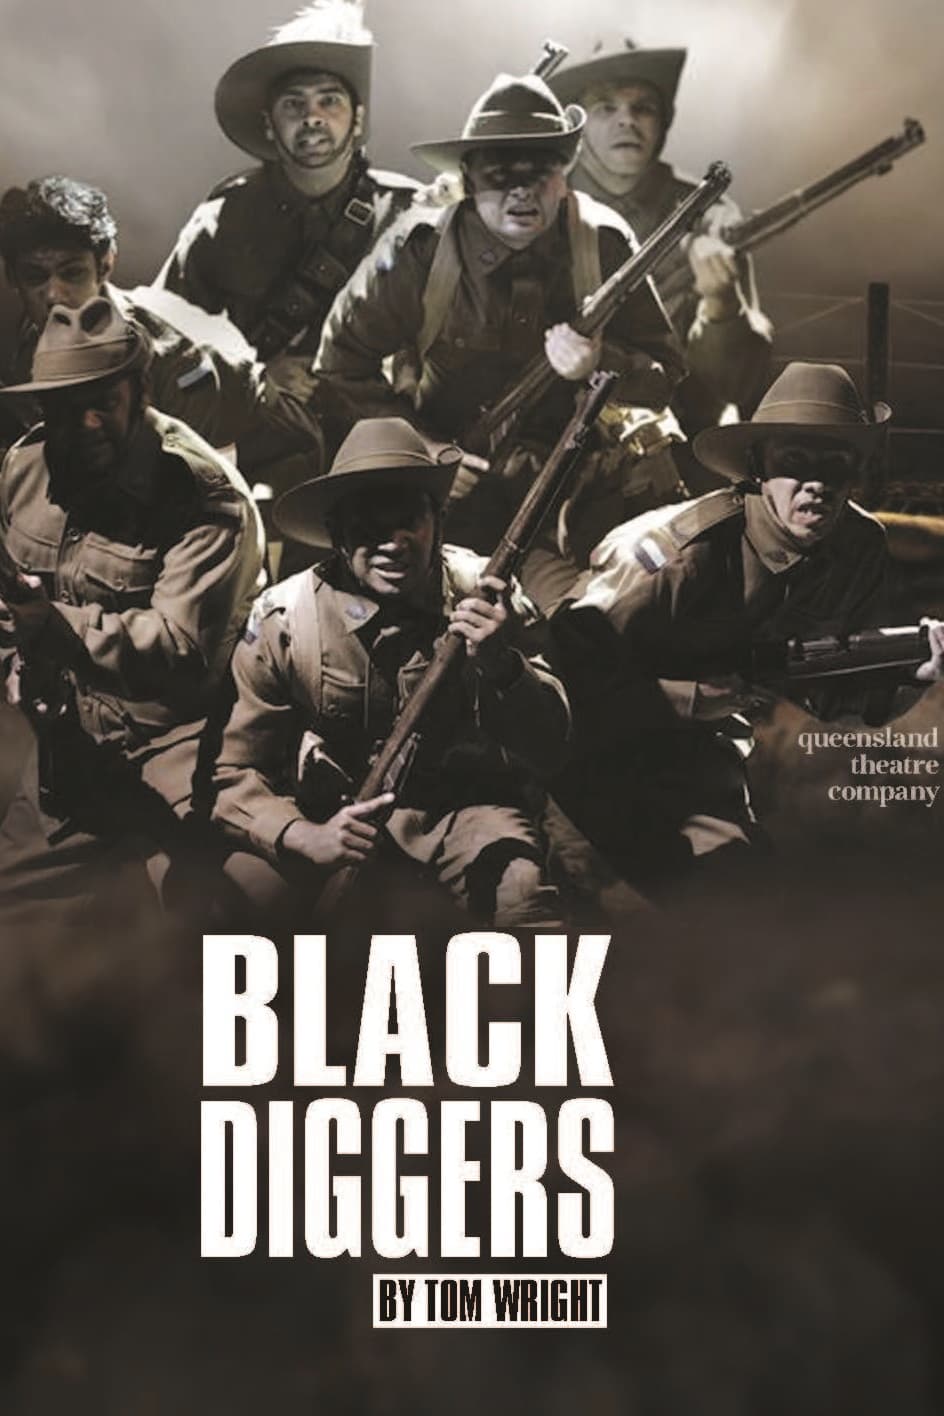 Black Diggers